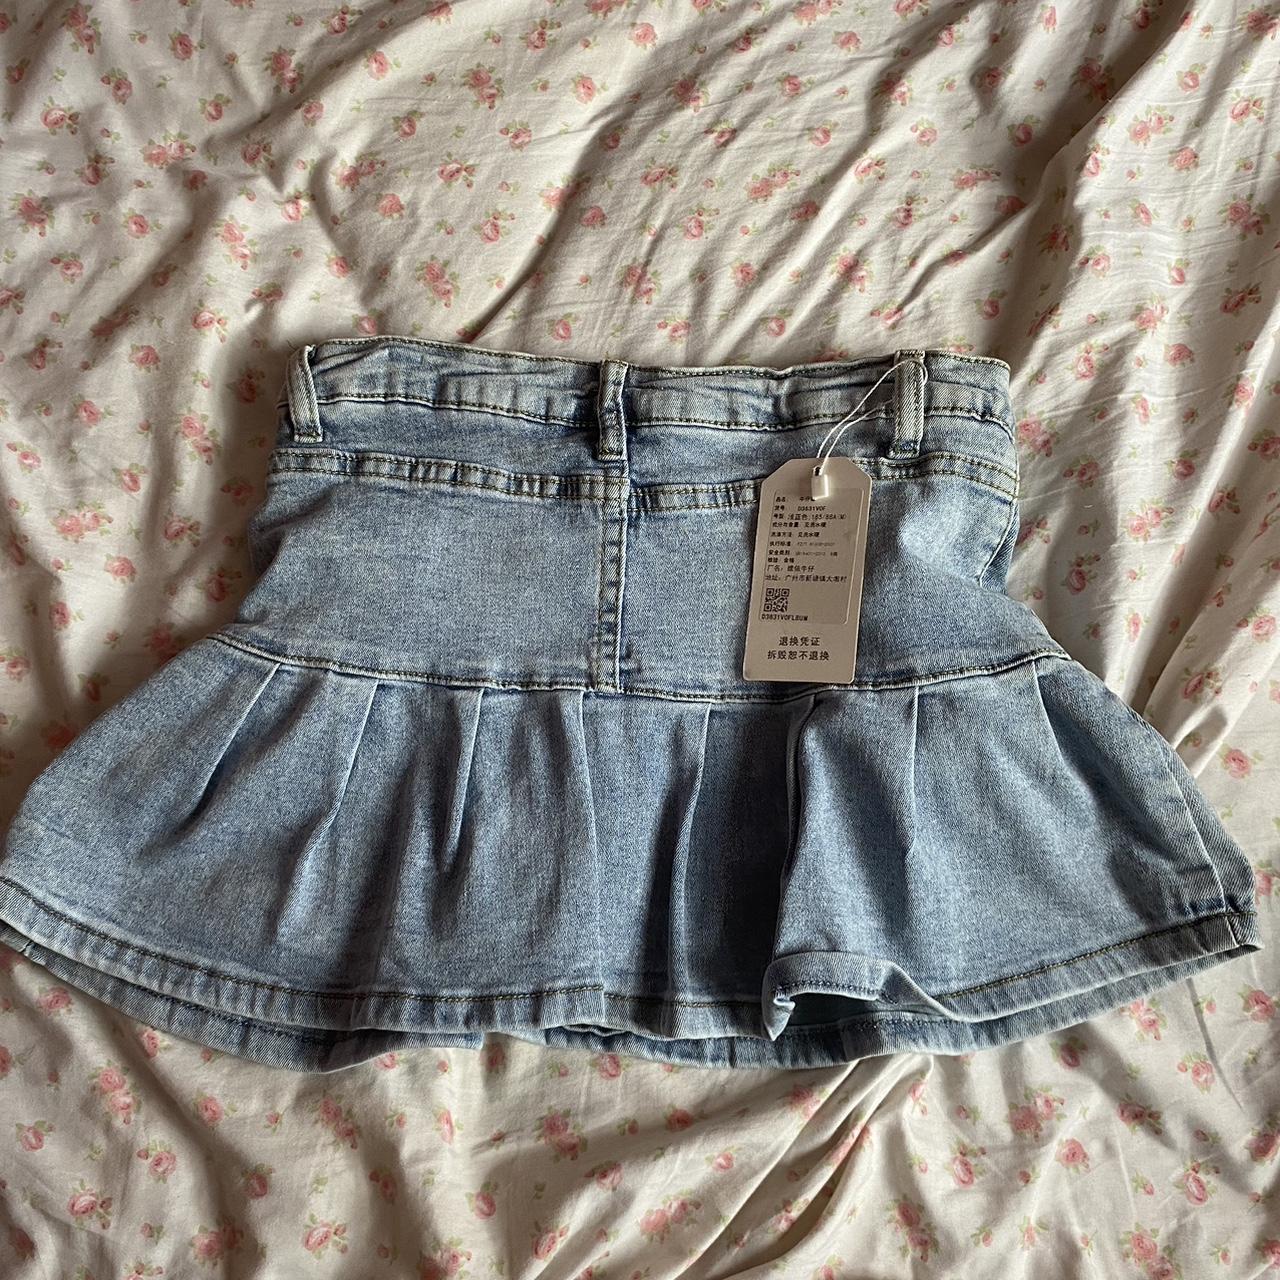 Jean mini pleated skirt - Depop